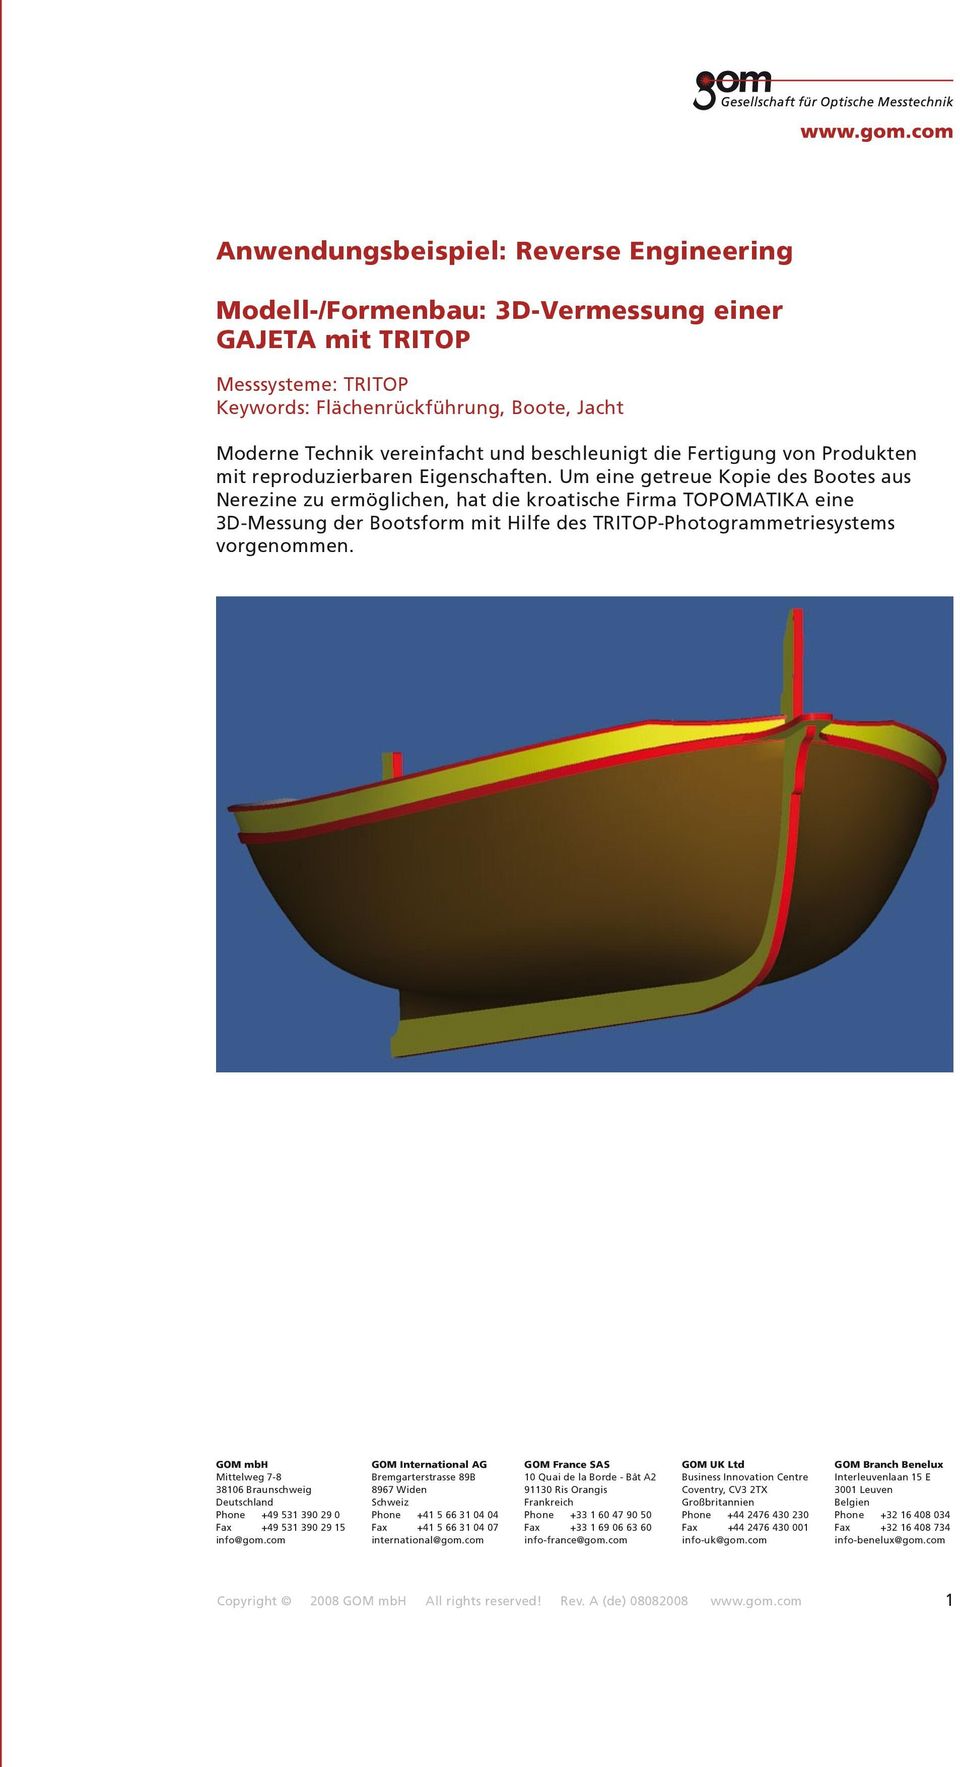 Um eine getreue Kopie des Bootes aus Nerezine zu ermöglichen, hat die kroatische Firma TOPOMATIKA eine 3D-Messung der Bootsform mit Hilfe des TRITOP-Photogrammetriesystems vorgenommen.